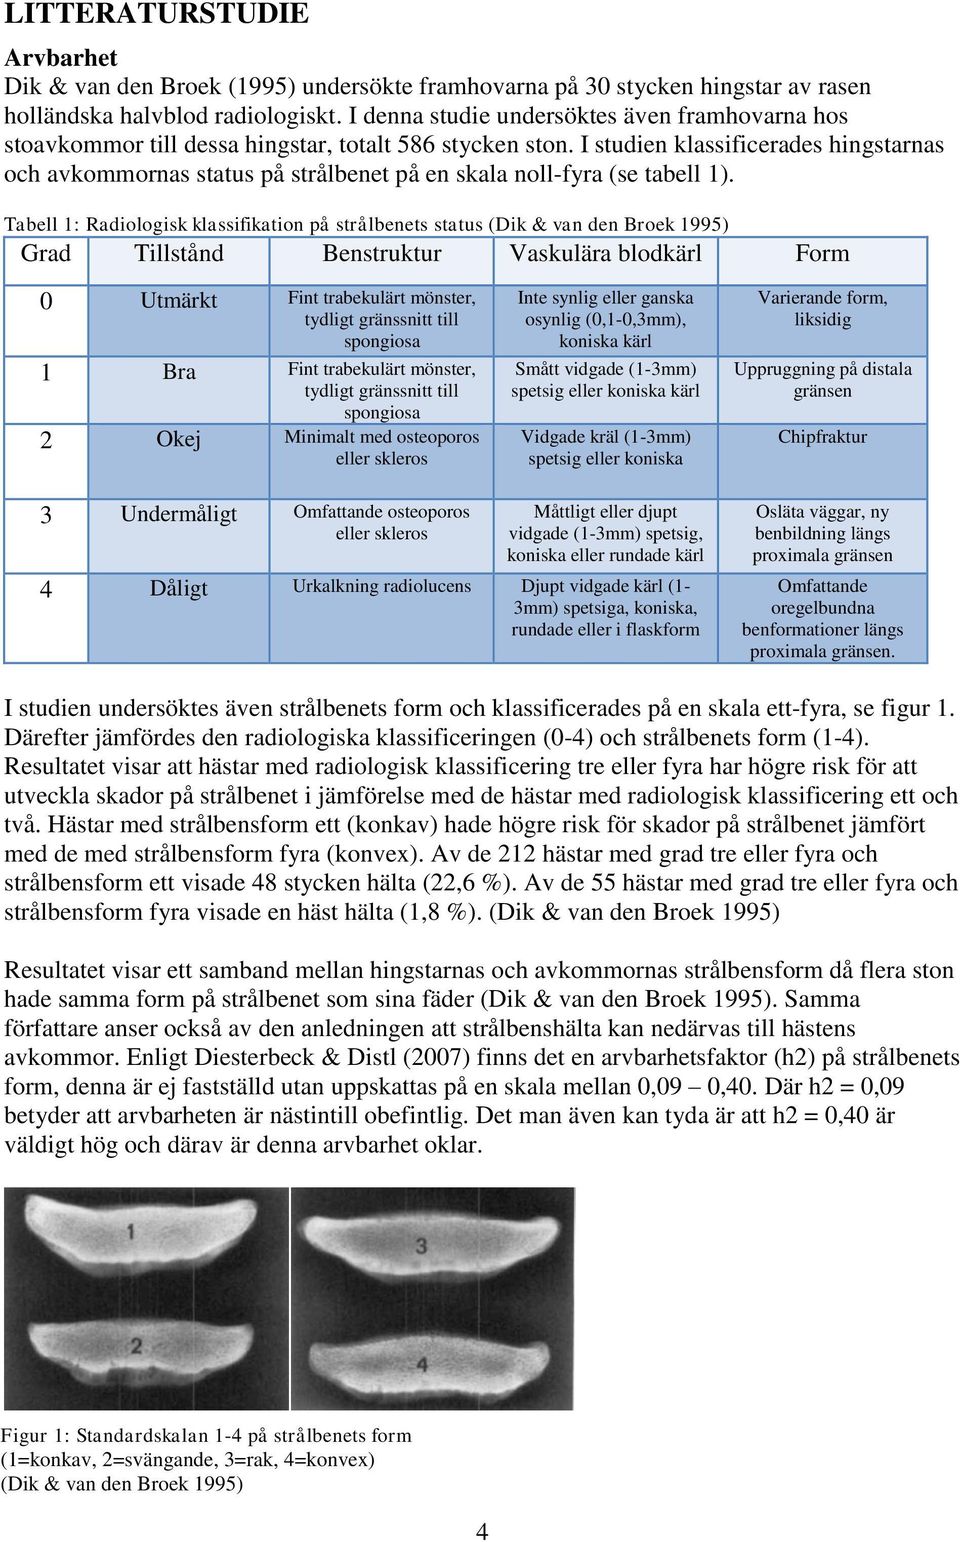 I studien klassificerades hingstarnas och avkommornas status på strålbenet på en skala noll-fyra (se tabell 1).